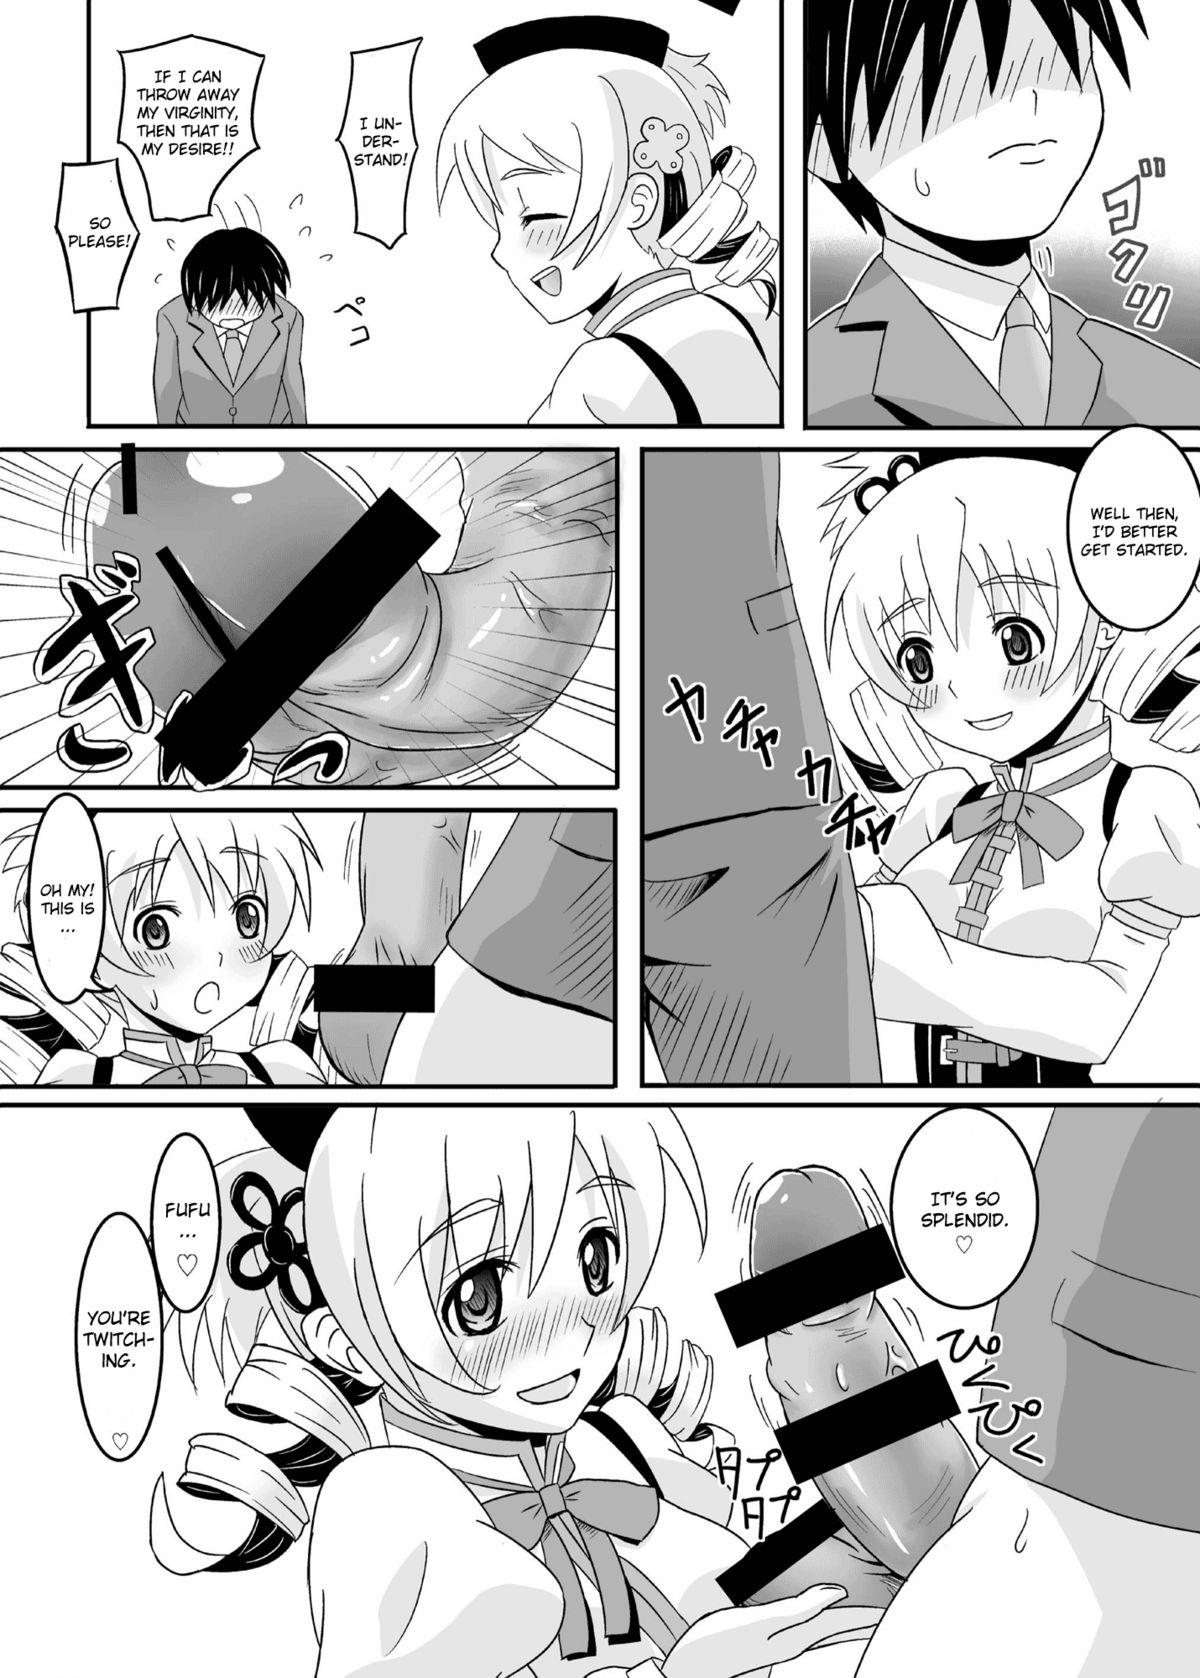 19yo Osewani narimasu Mami-san! - Puella magi madoka magica Chilena - Page 8